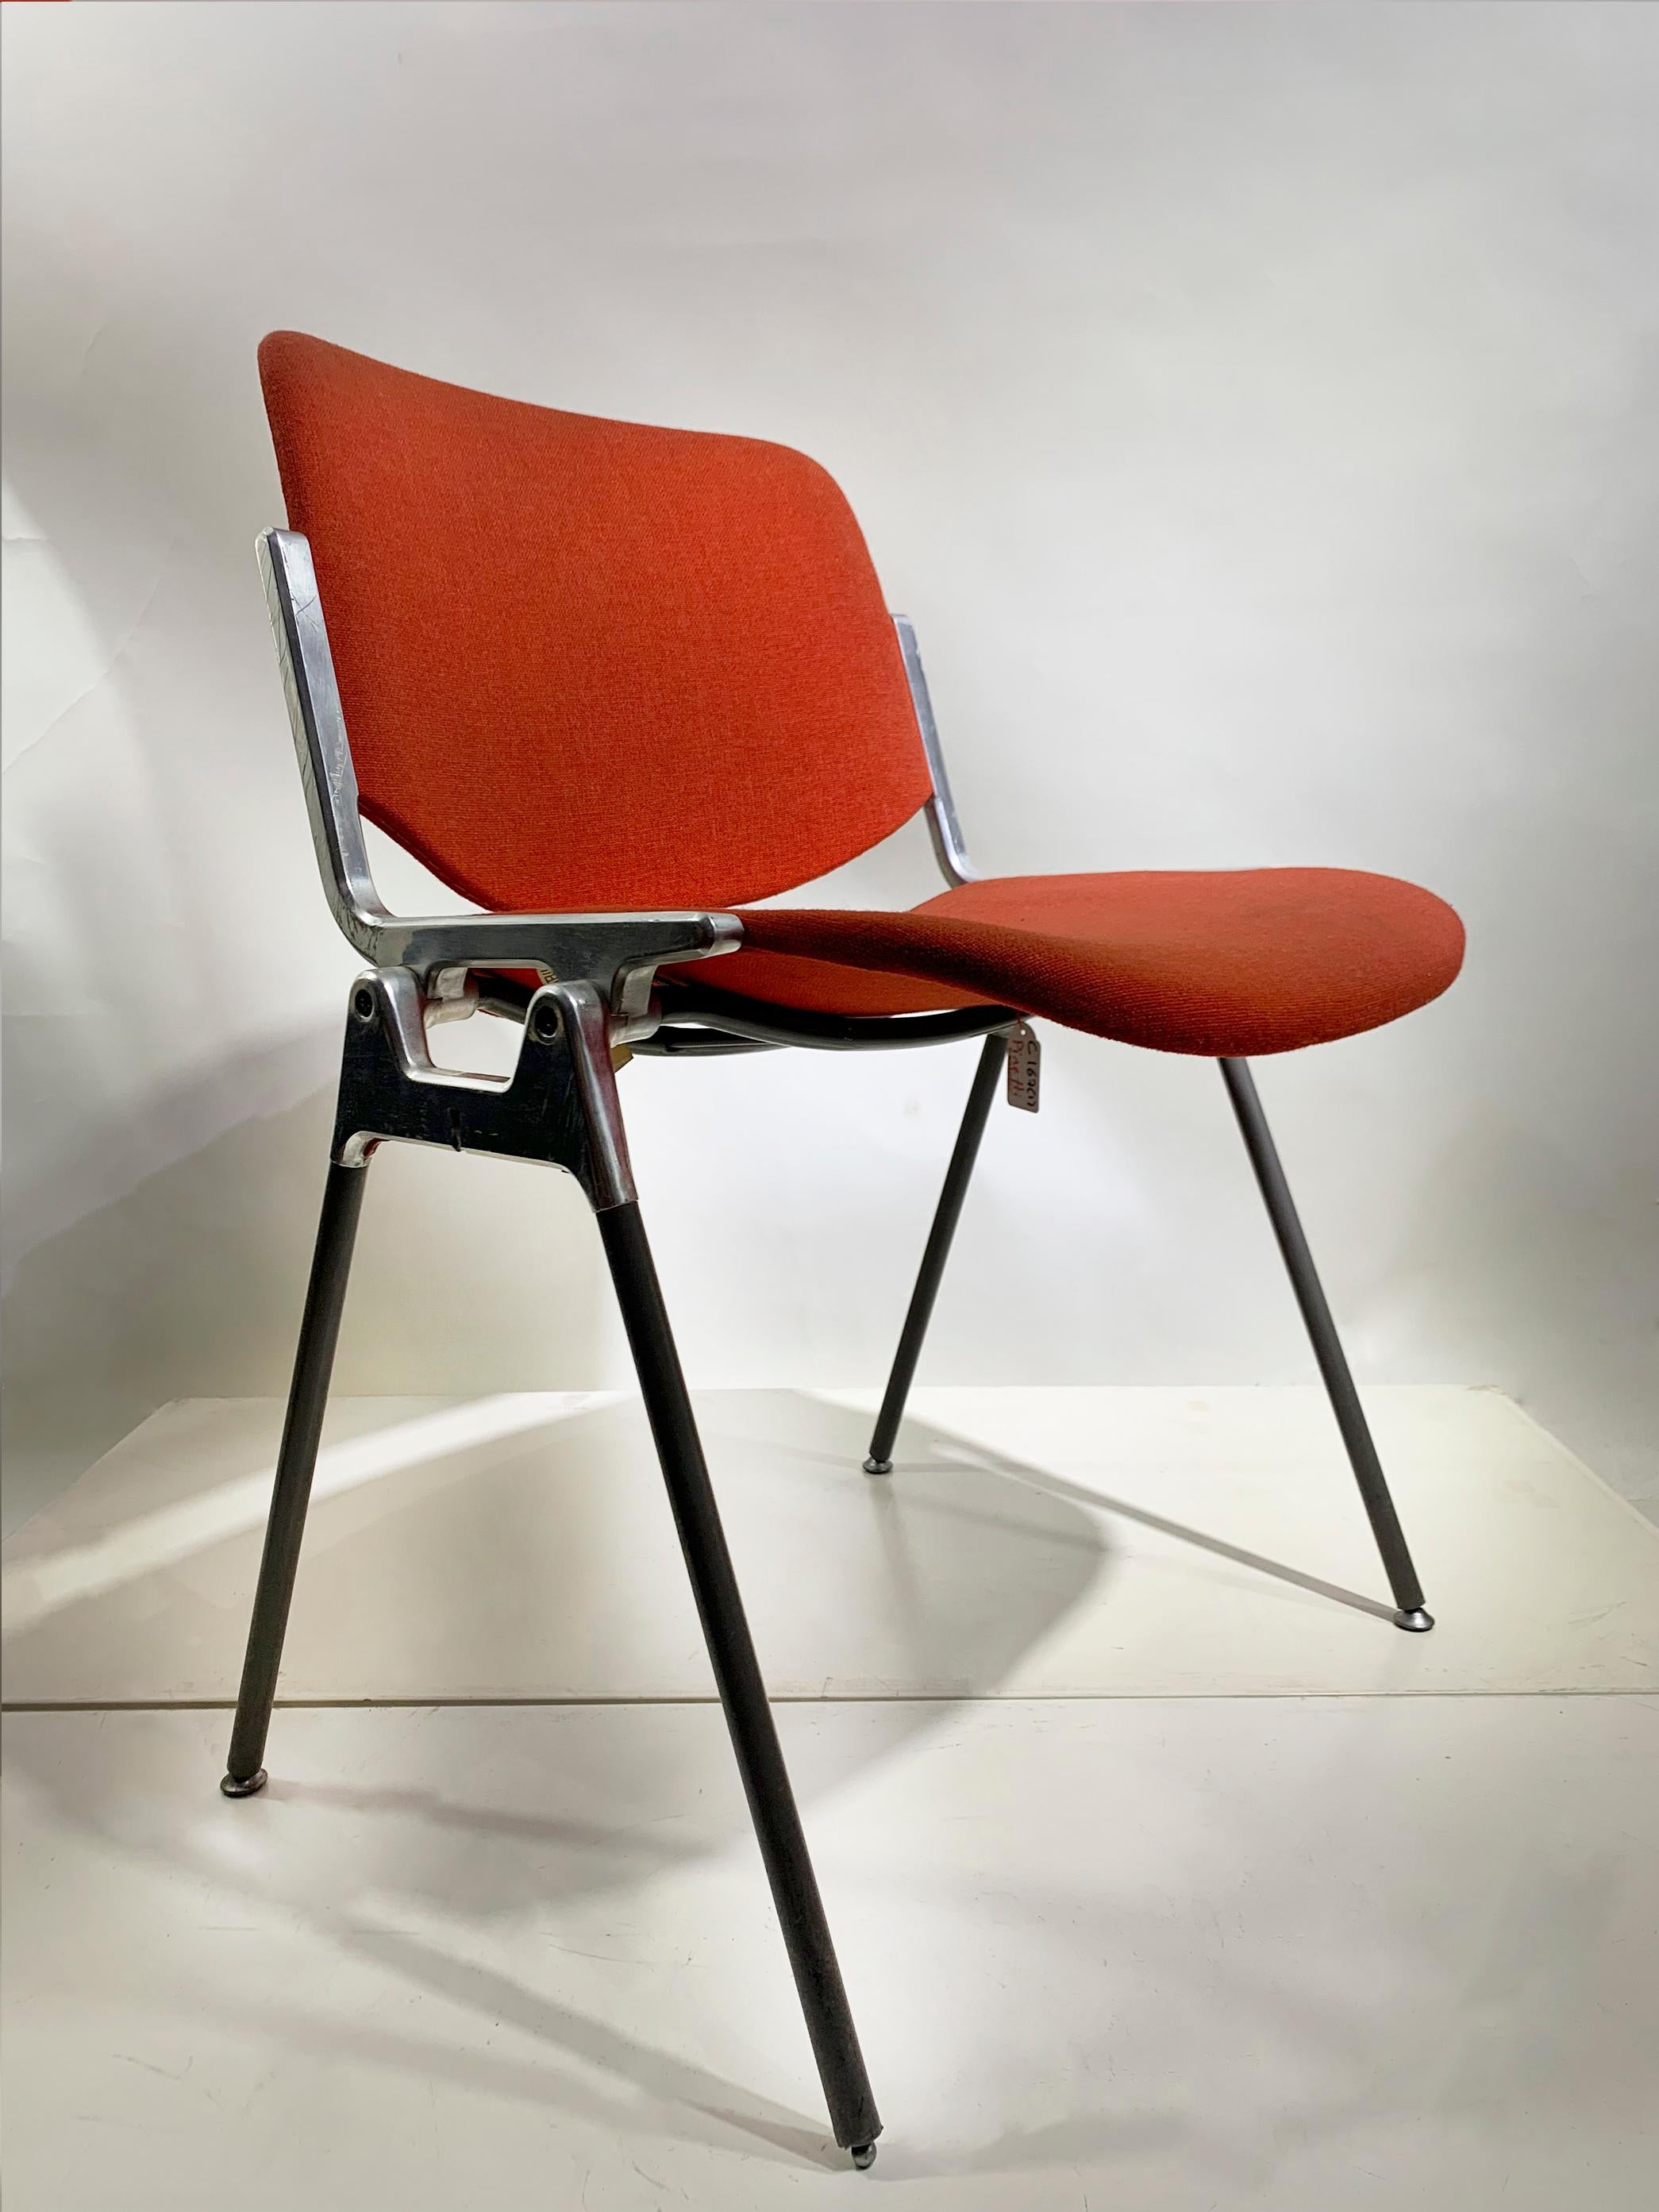 Le DSC 106 est l'un des fauteuils les plus célèbres de la marque Castelli. Conçu par Giancarlo Piretti, il reste un objet au design innovant et fascinant.

L'élégante imbrication des lignes qui définissent les formes du dsc 106 a été admirée par des